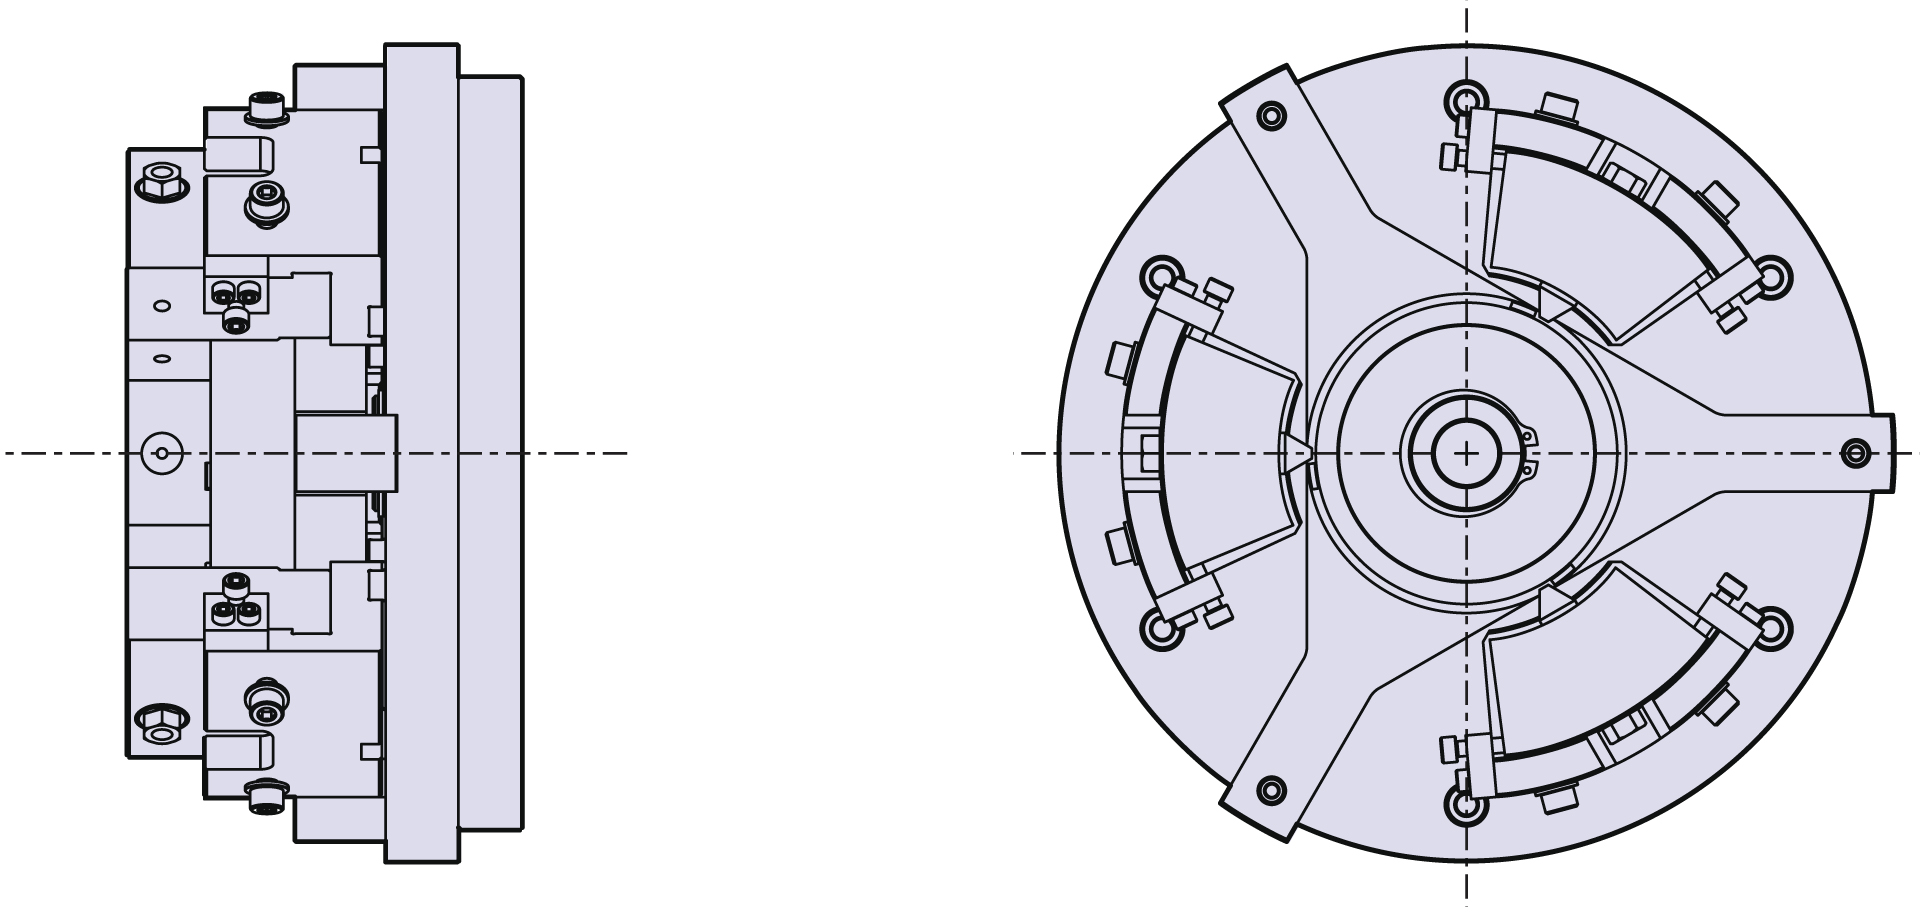 Serraggio su diametro primitivo con angolo registrabile per setup rapido